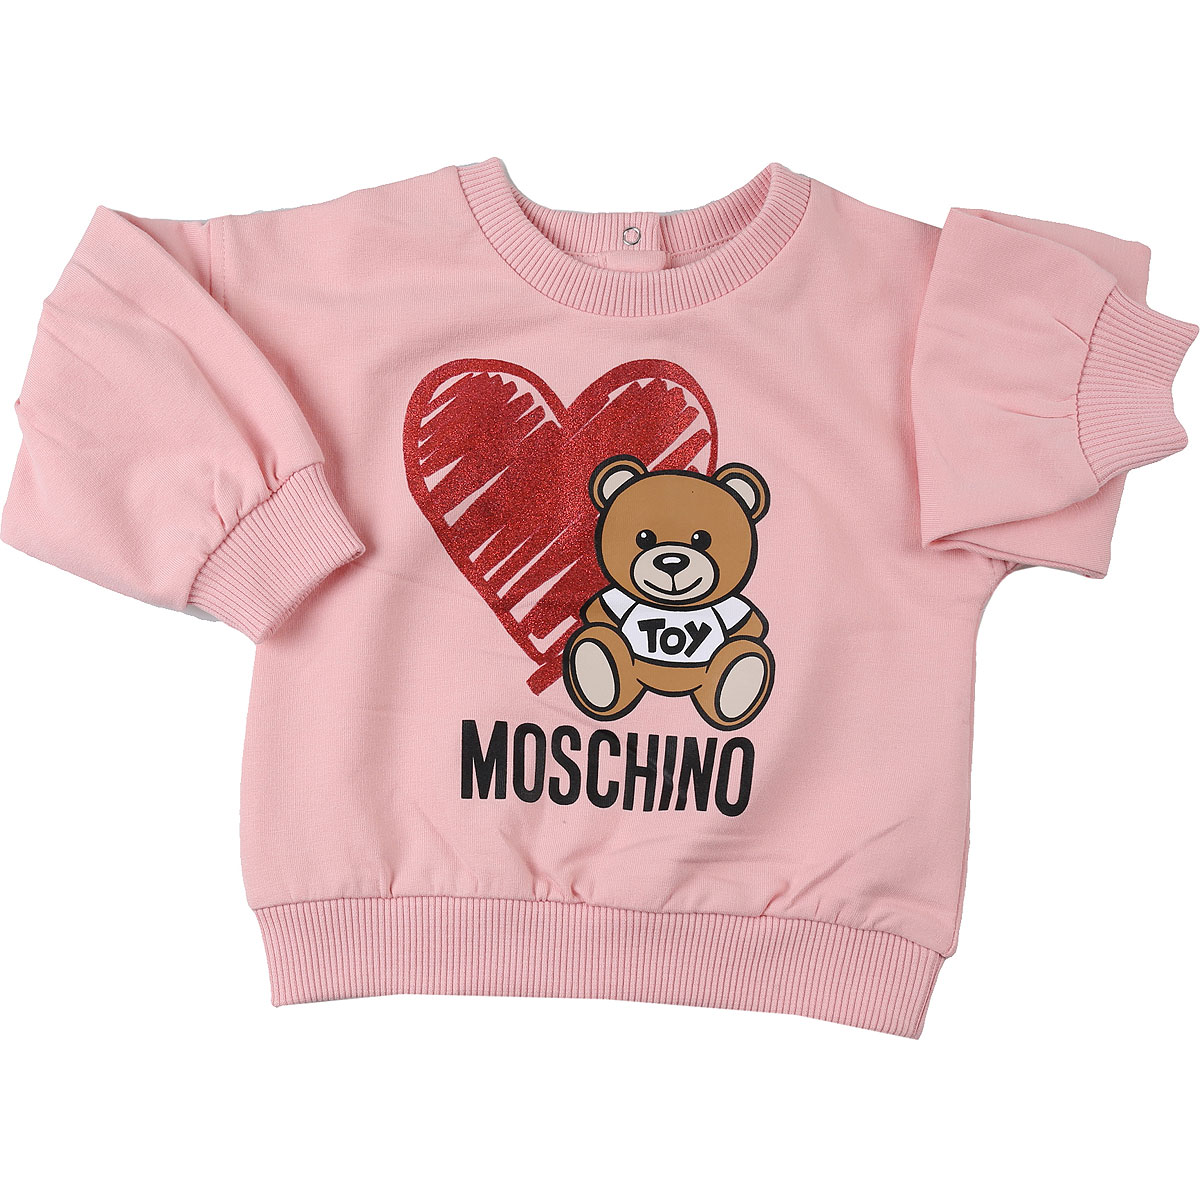 Moschino Baby Sweatshirt & Kapuzenpullover für Mädchen Günstig im Sale, Pink, Baumwolle, 2017, 12M 18M 24M 2Y 3Y 6M 9M